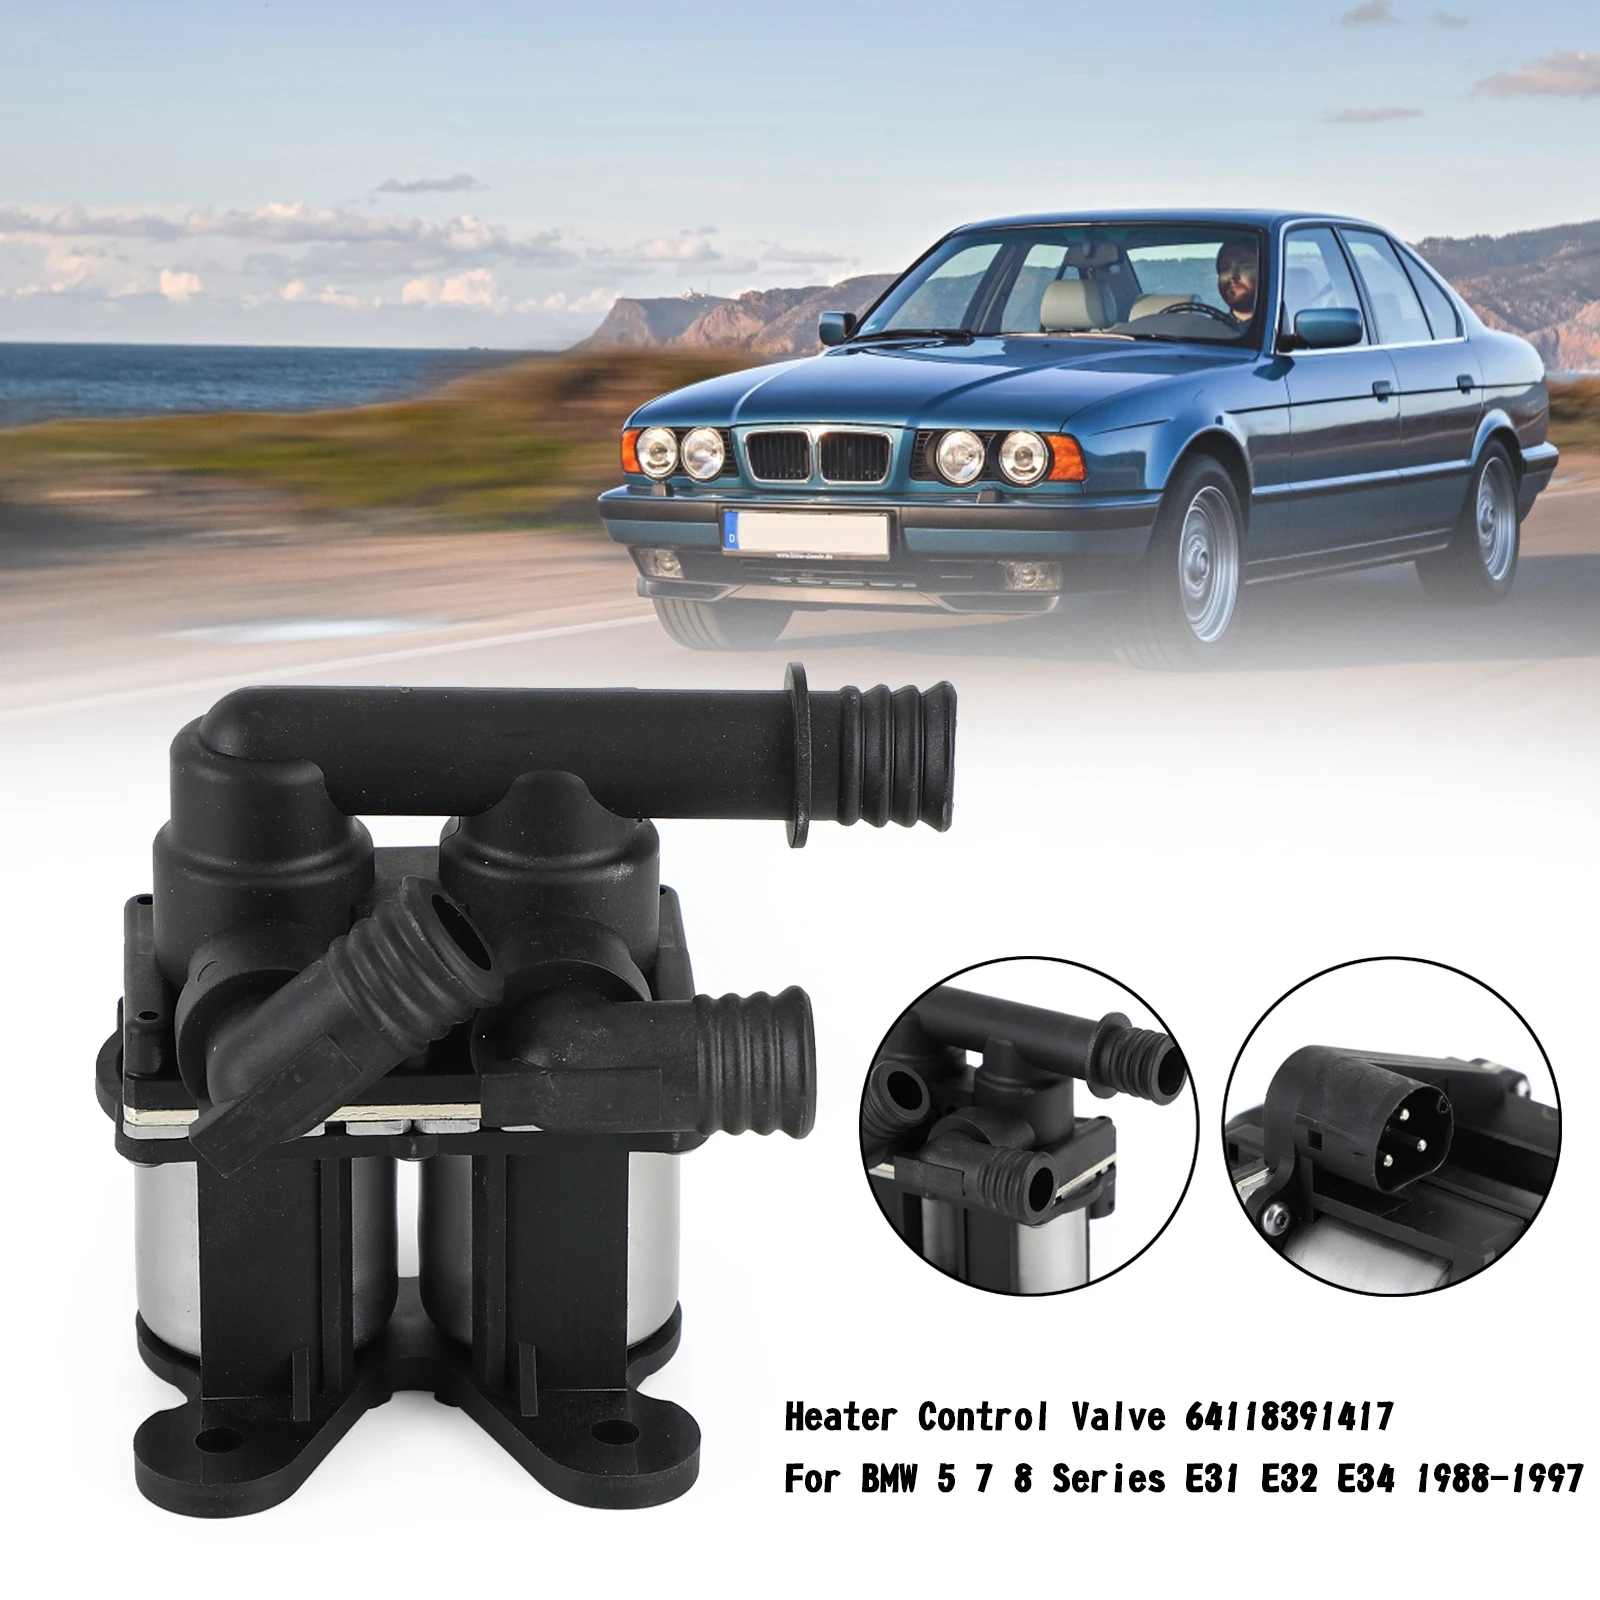 

Artudatech Heater Control Valve 64118391417 For BMW 5 7 8 Series E31 E32 E34 1988-1997 Car Accessories